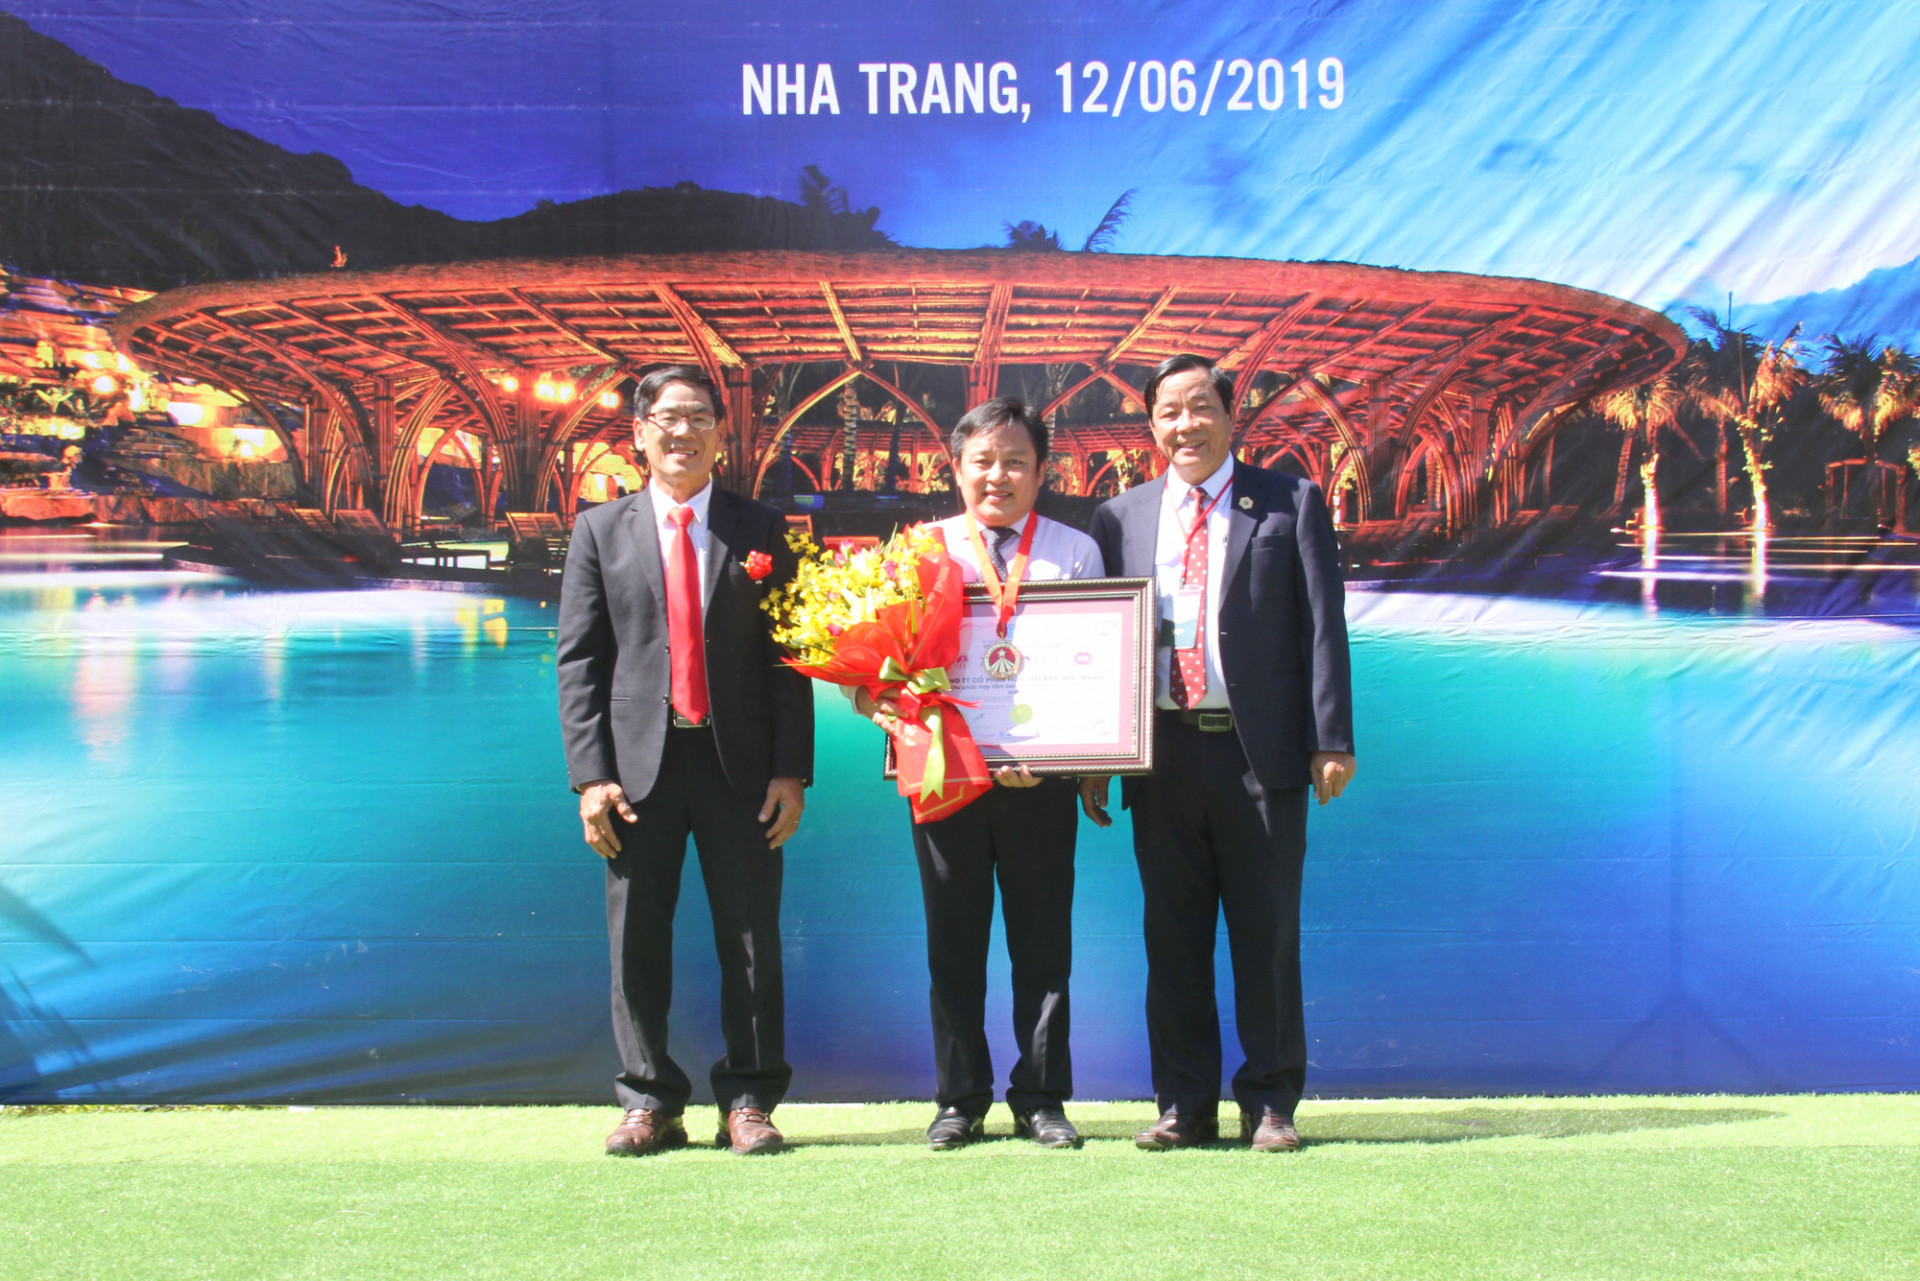  Đại diễn Tổ chức Kỷ lục Việt Nam trao bằng chứng nhận kỷ lục cho lãnh đạo Công ty Cổ phần Hòn Tằm Biển Nha Trang